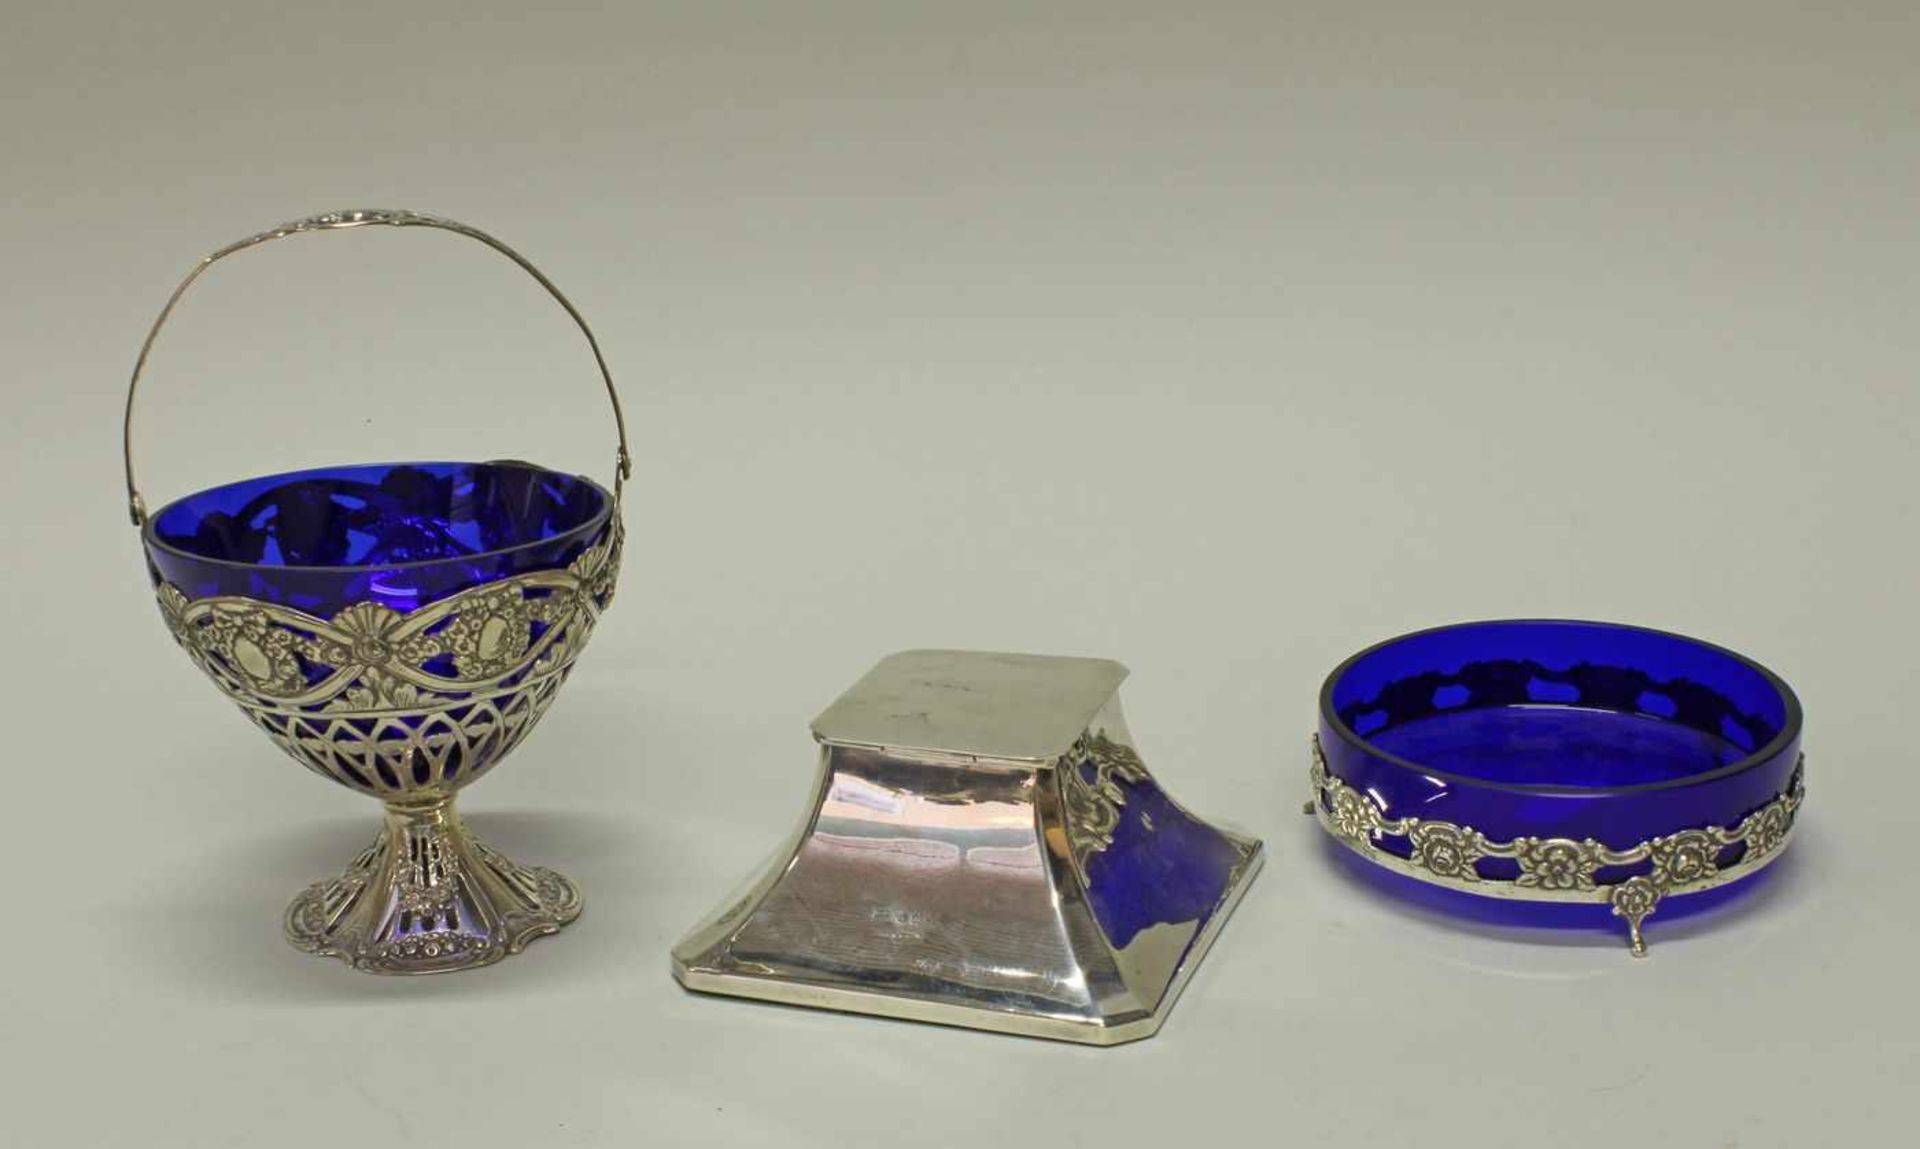 Schale, Henkelkorb, Silber 800/835, à jour gearbeitet, Blütenzier, blaue Glaseinsätze, 4-12 cm hoch,